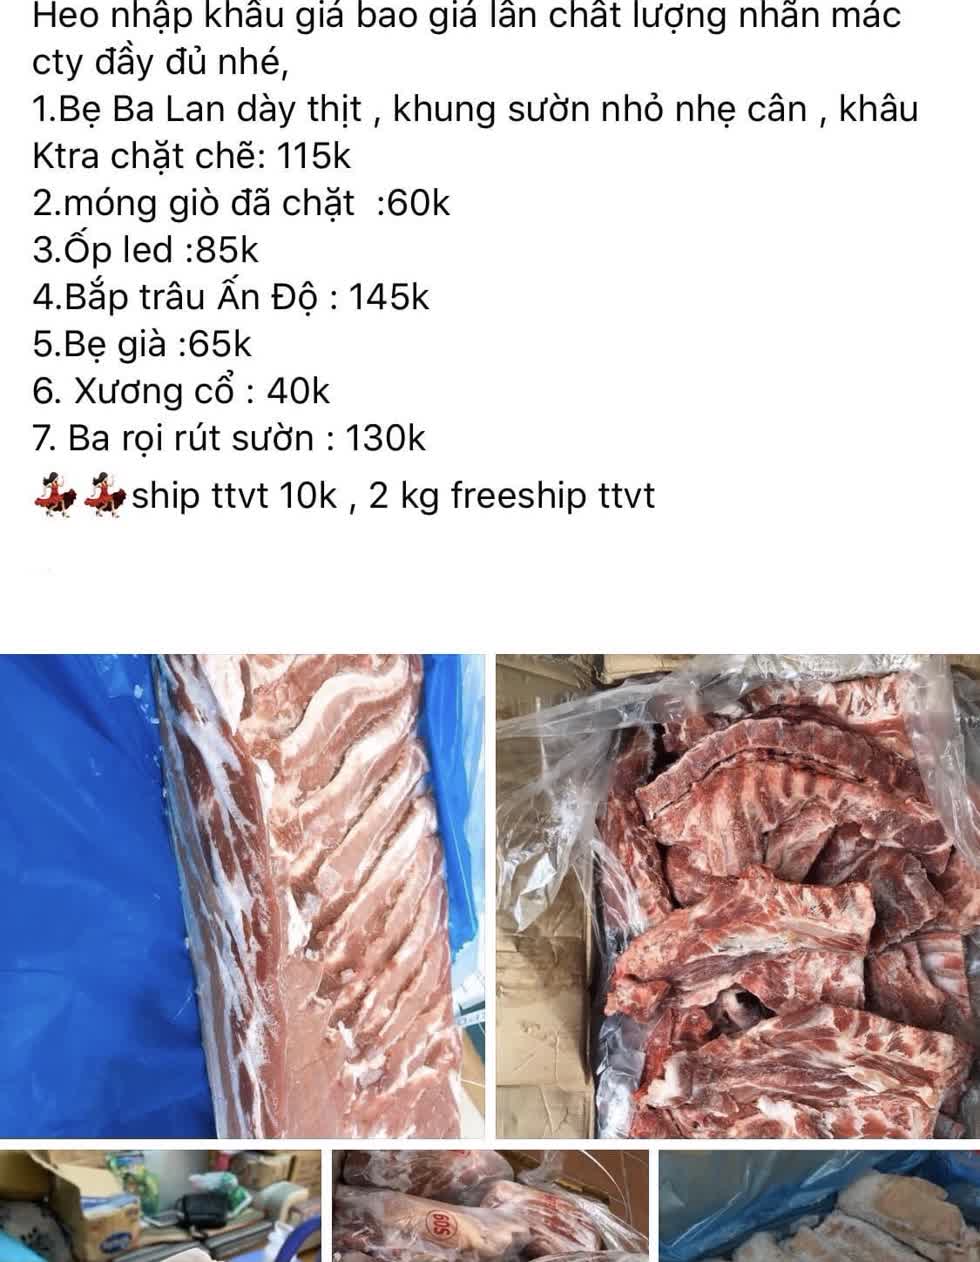   Hàng loạt bài viết tương tự rao bán “thịt siêu thị” siêu rẻ trên chợ online những ngày gần đây.   